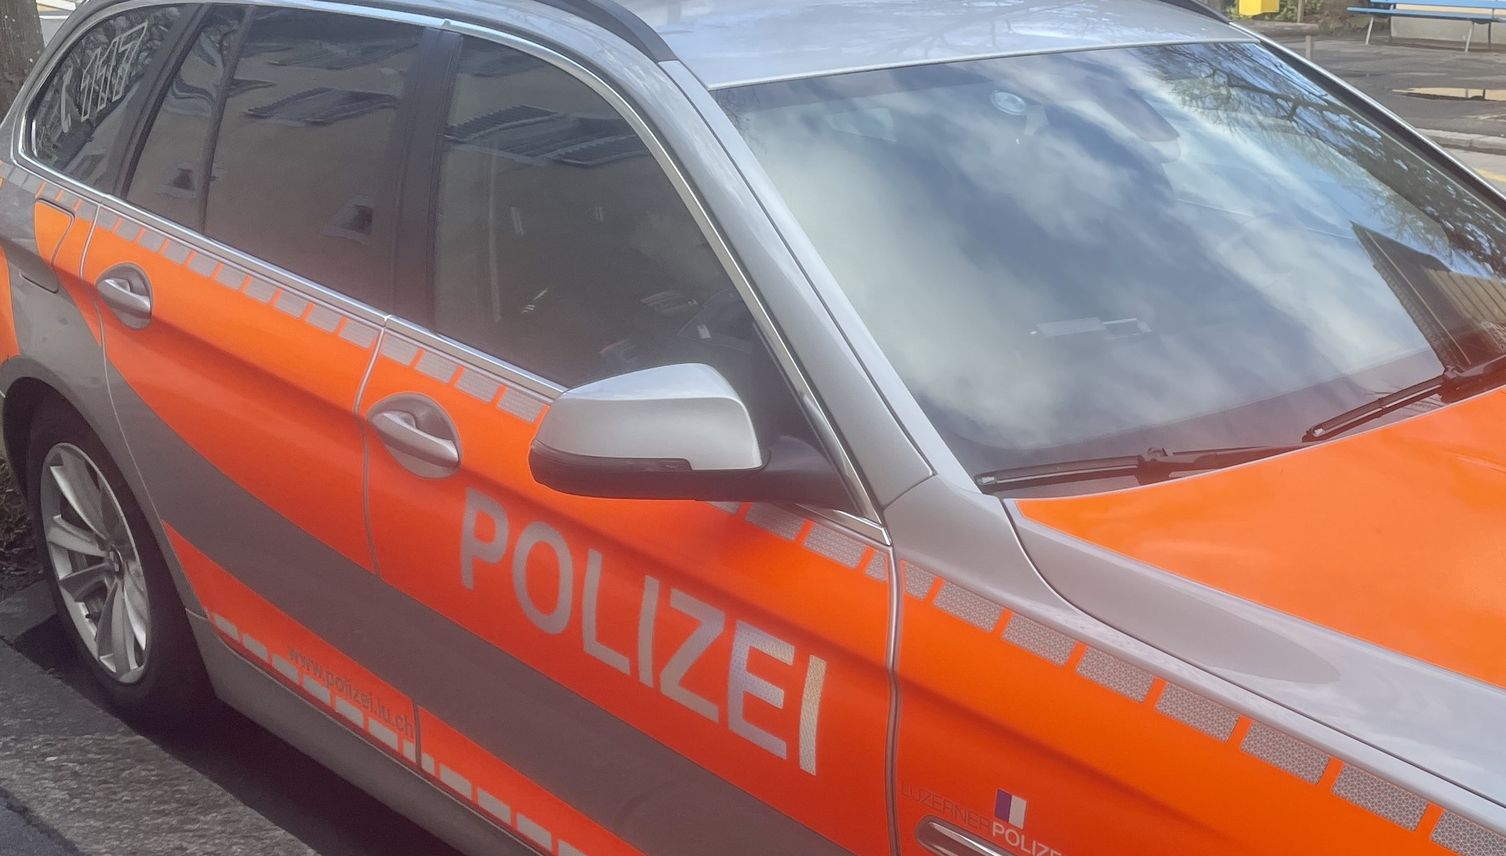 Fahndung: Polizei sucht Fahrer nach Kollision